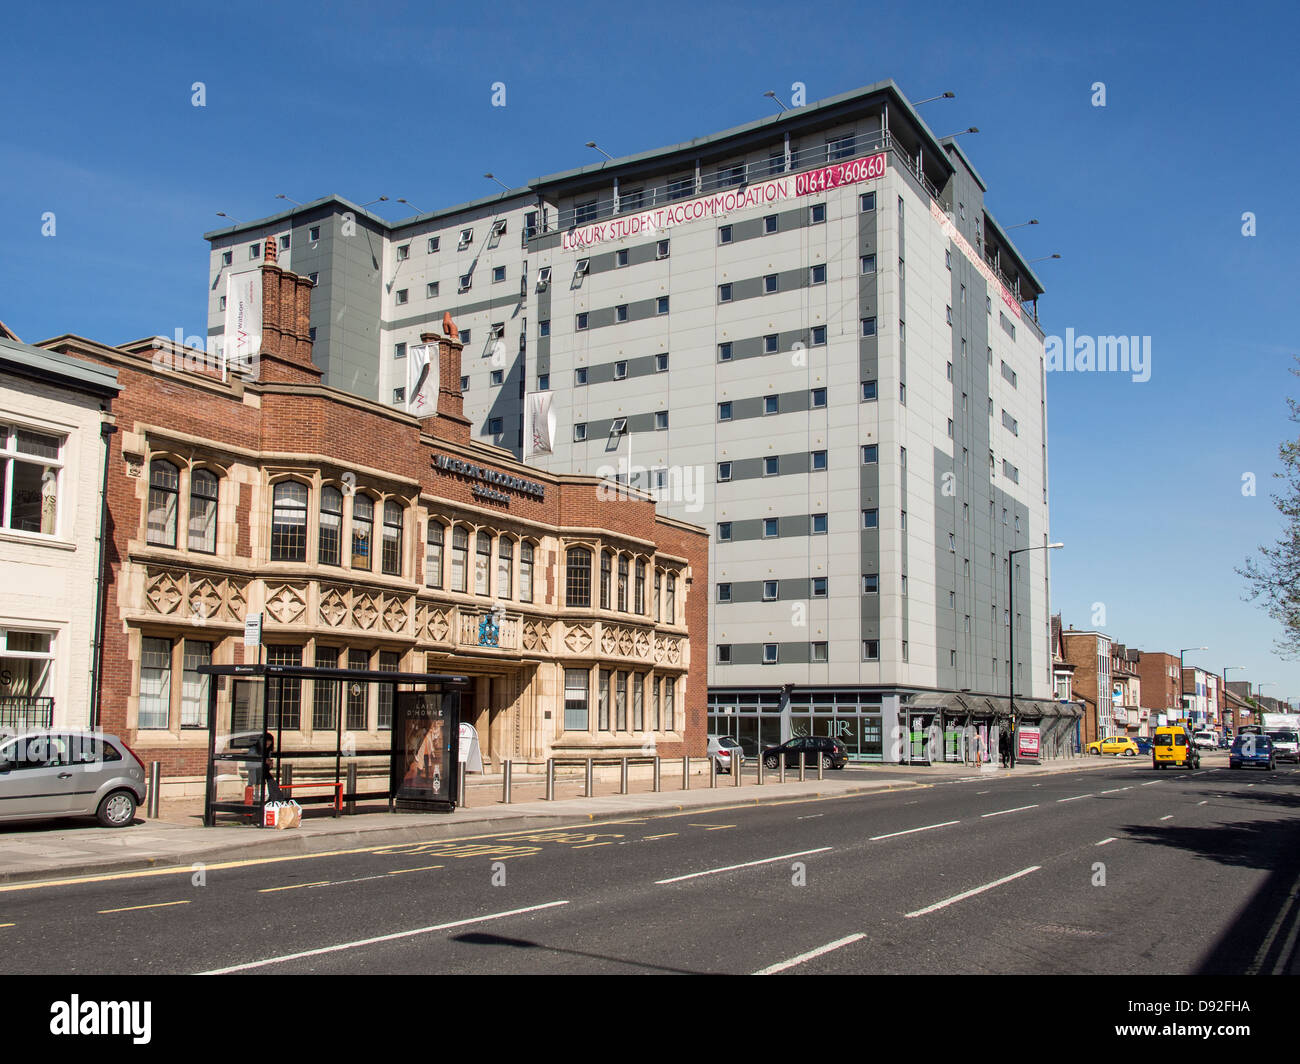 Moderno alojamiento para estudiantes cerca de la Universidad de Teeside en Middlesbrough UK Foto de stock